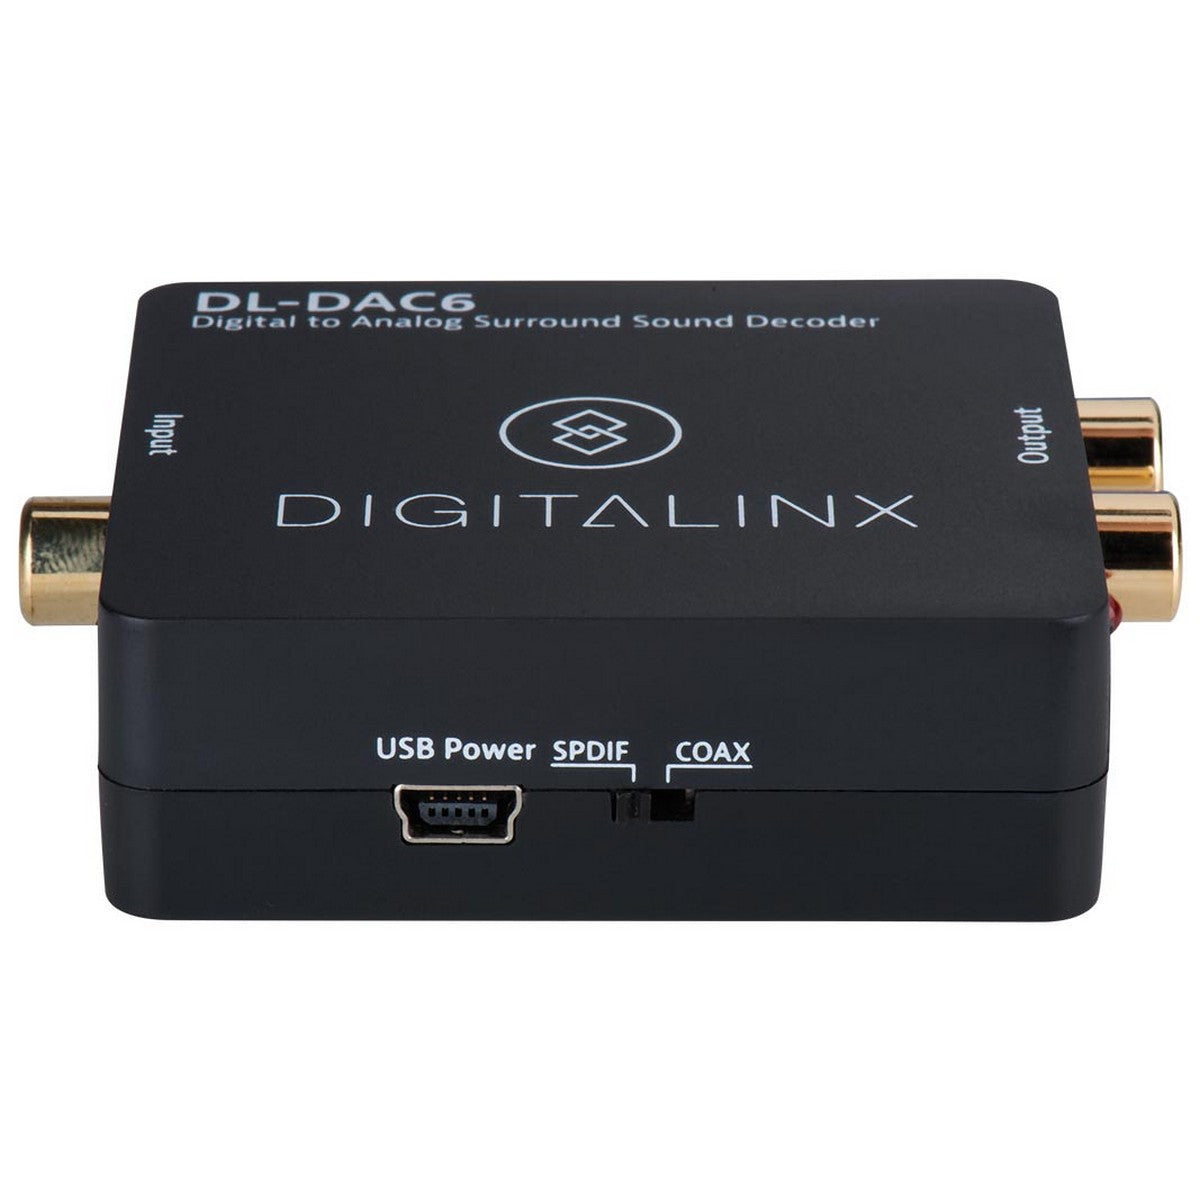 DigitaLinx DL-DAC6 | Digitalinx Digital to Analog Surround Sound Decoder